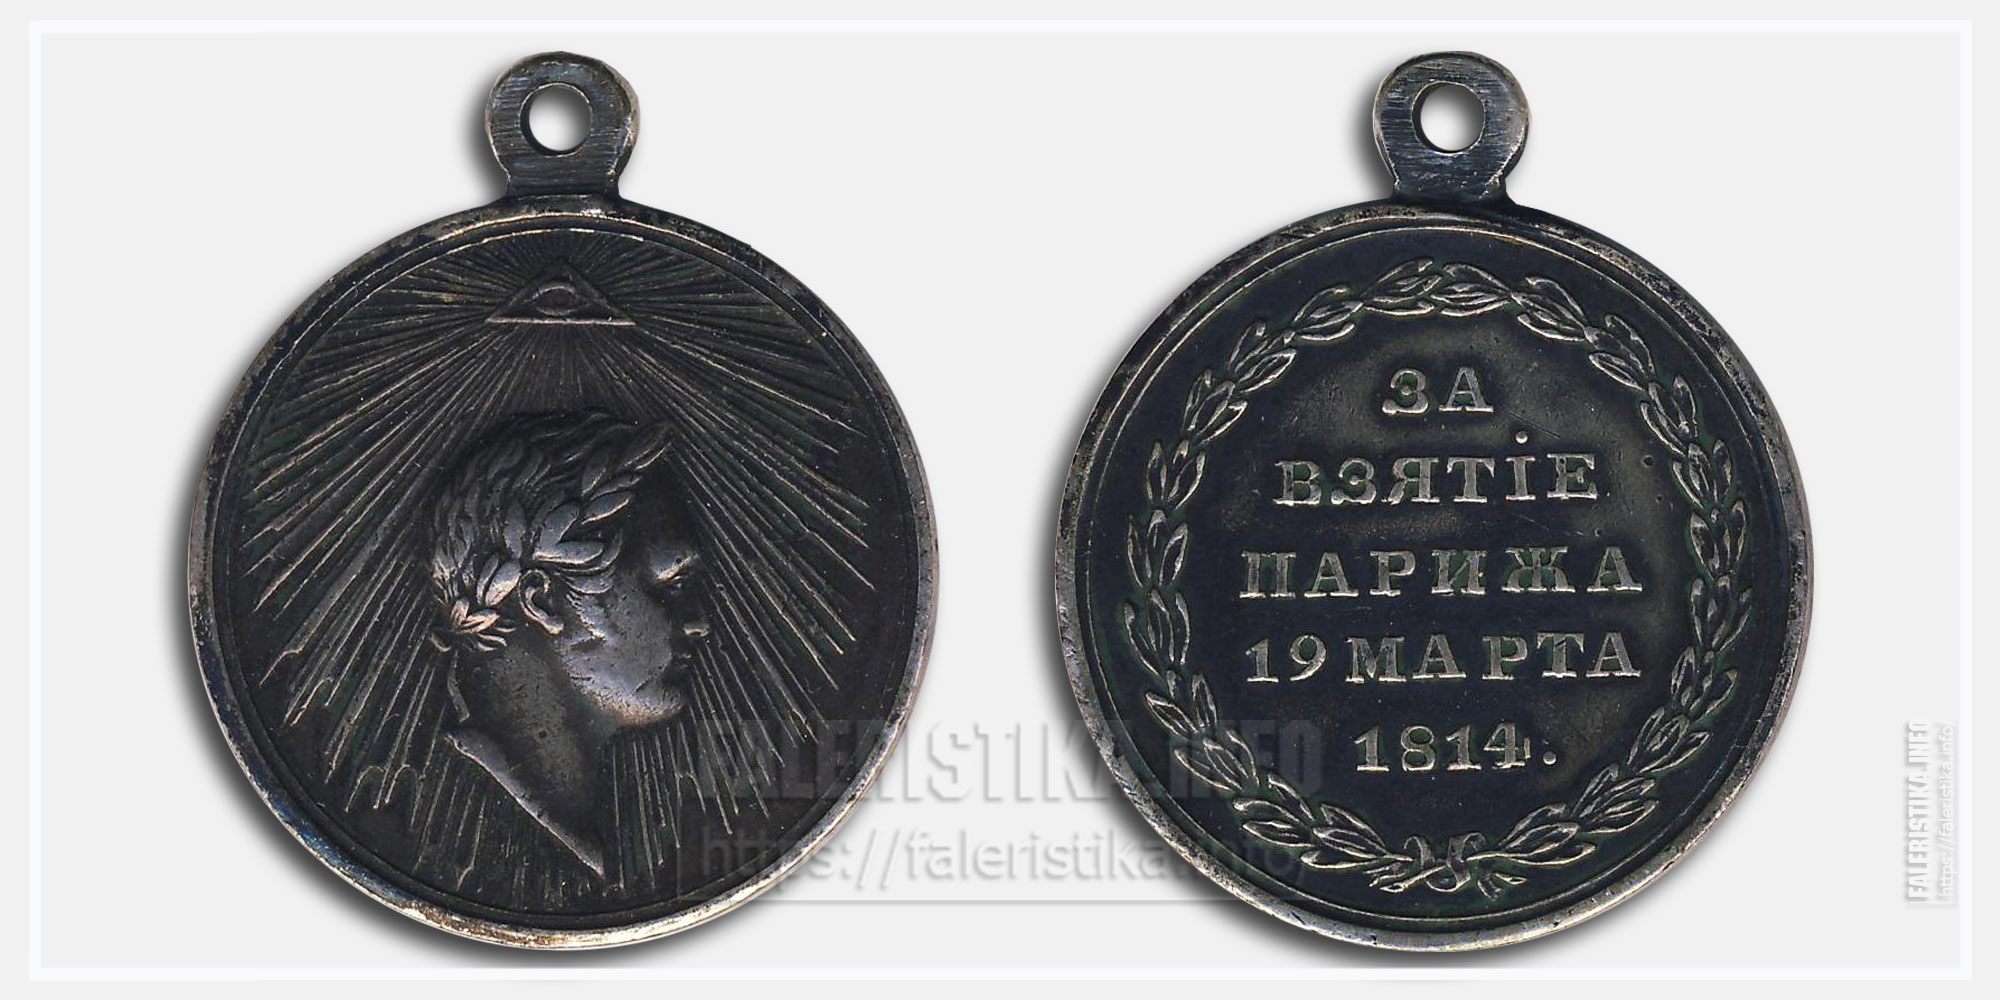 Медаль "За взятие Парижа" 1814